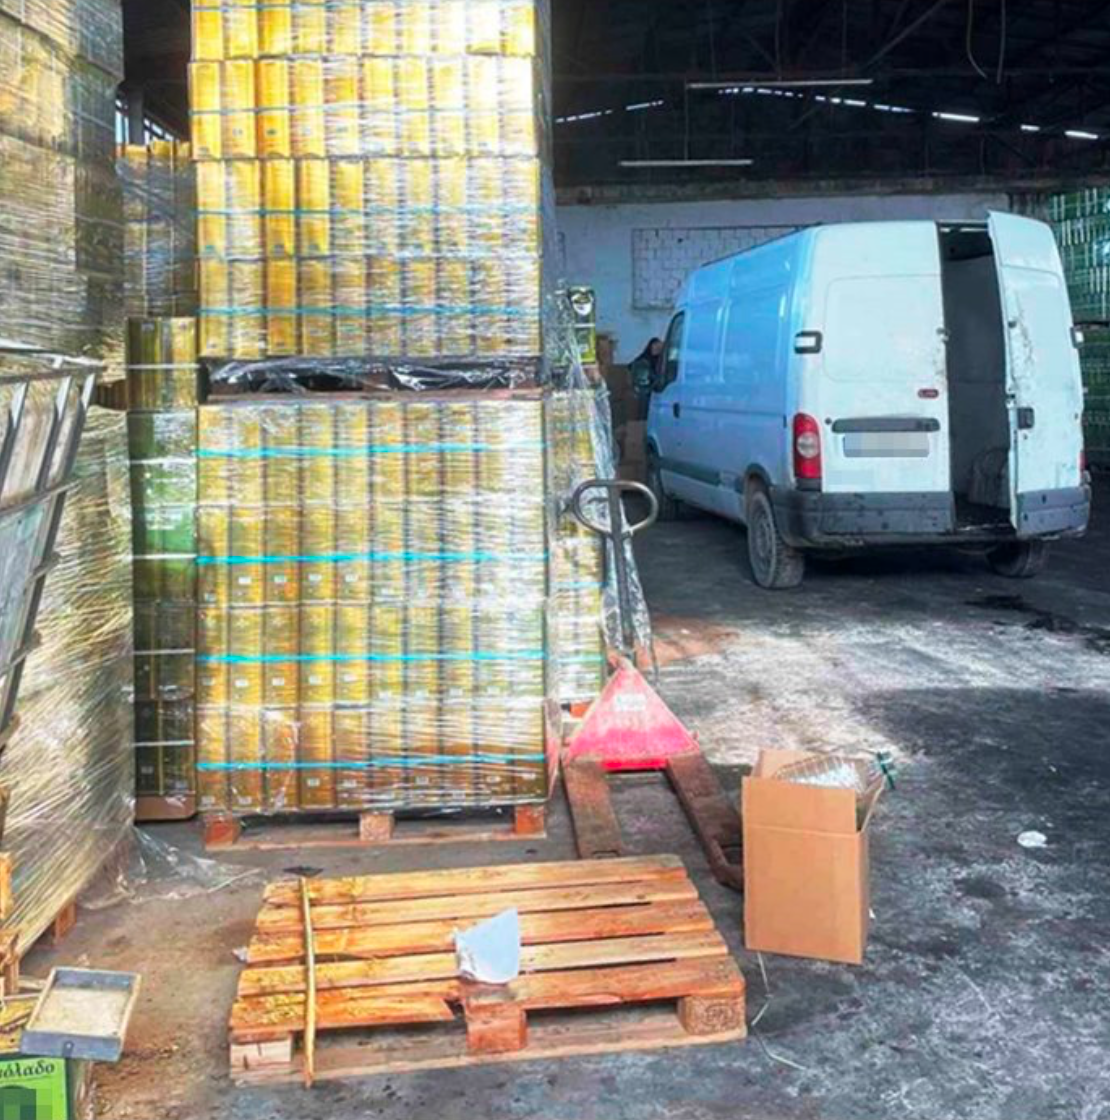 Θεσσαλονίκη: Εισήγαγαν ηλιέλαιο από Βουλγαρία και το πωλούσαν ως έξτρα παρθένο ελαιόλαδο